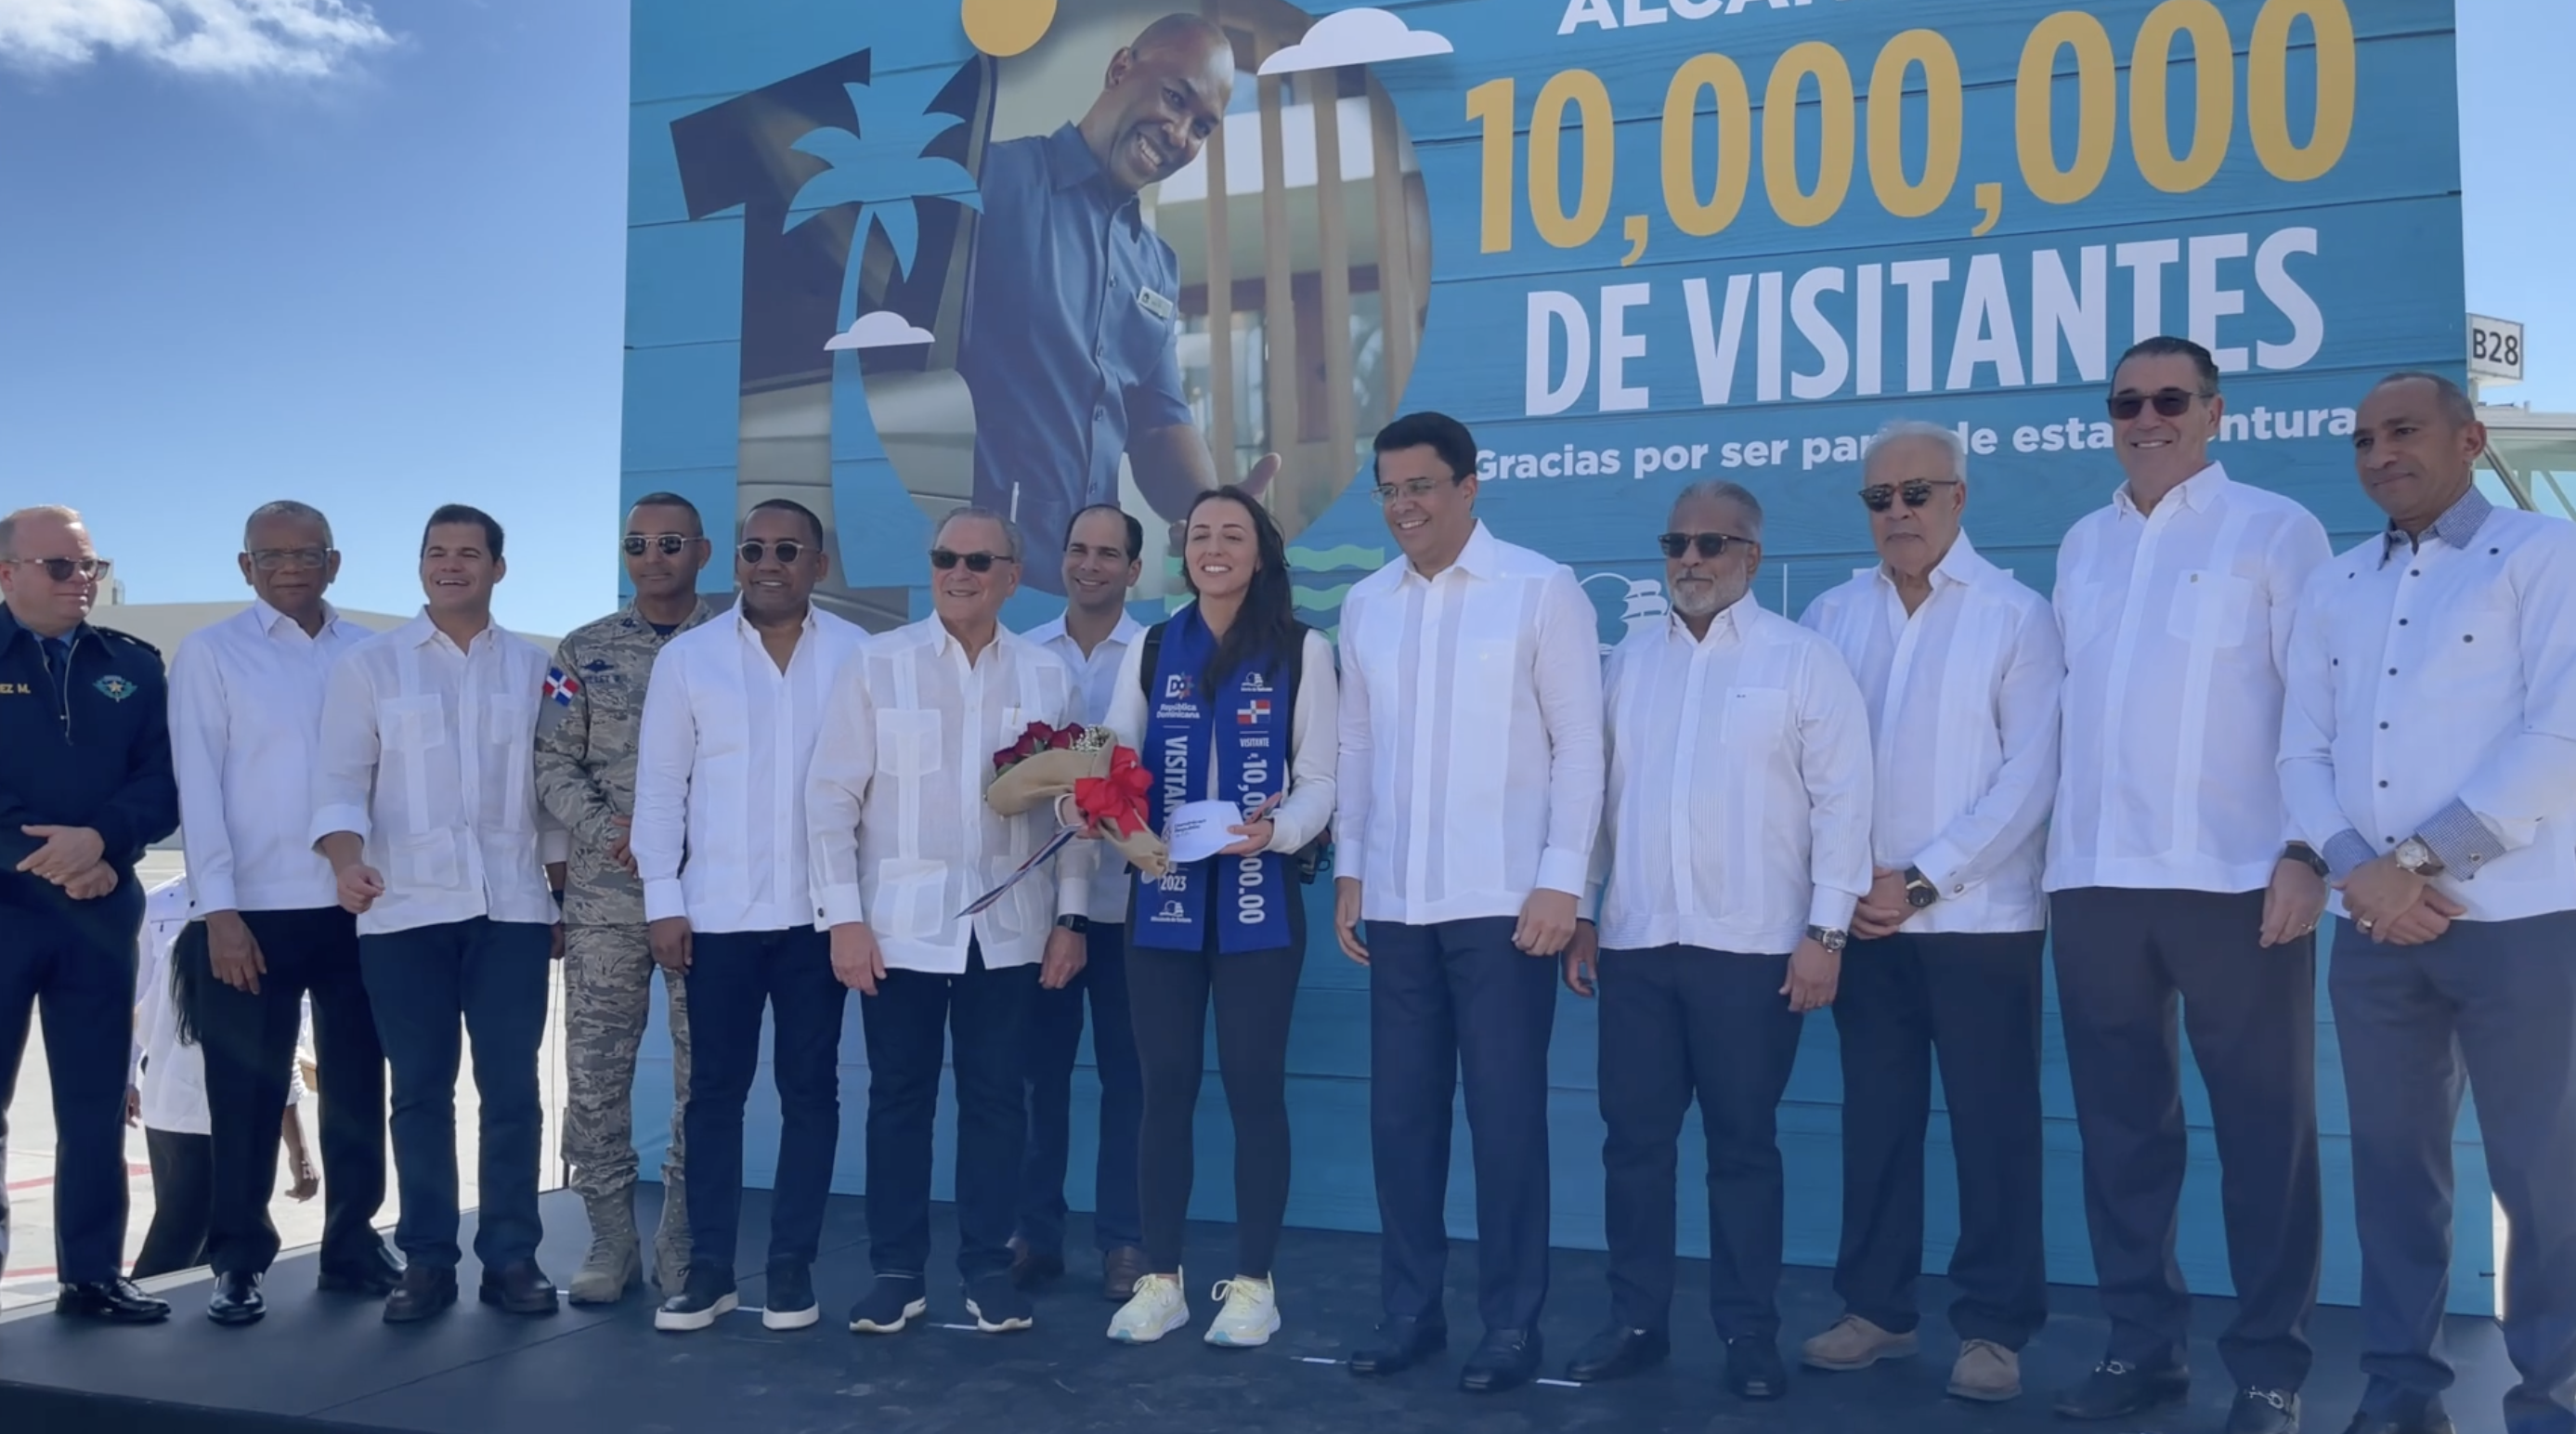 República Dominicana Recibe  A Su Visitante Número 10 Millones